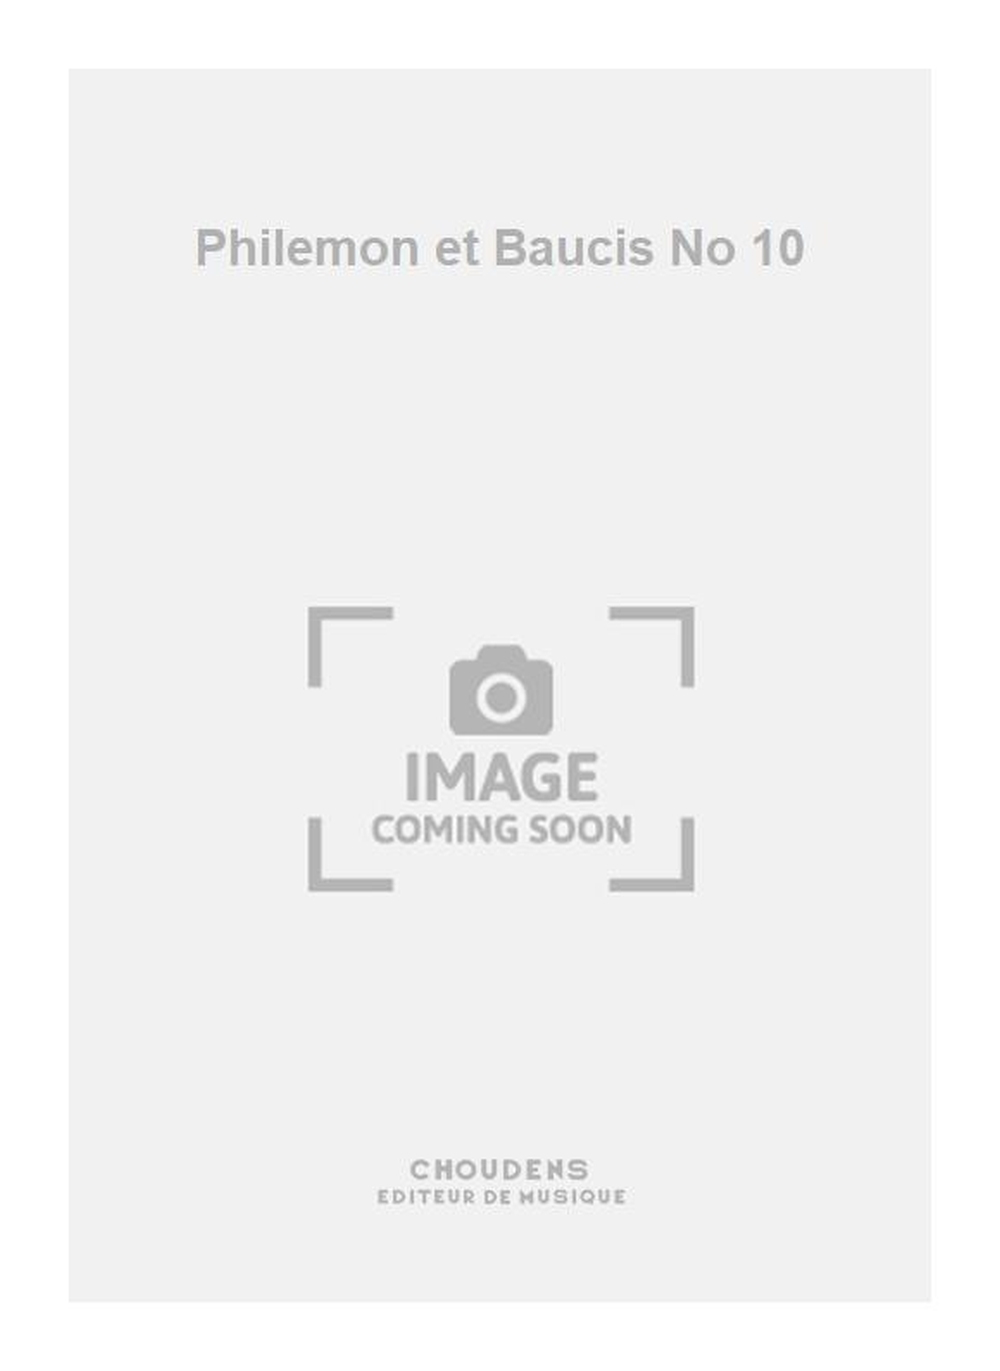 Charles Gounod: Philemon et Baucis No 10